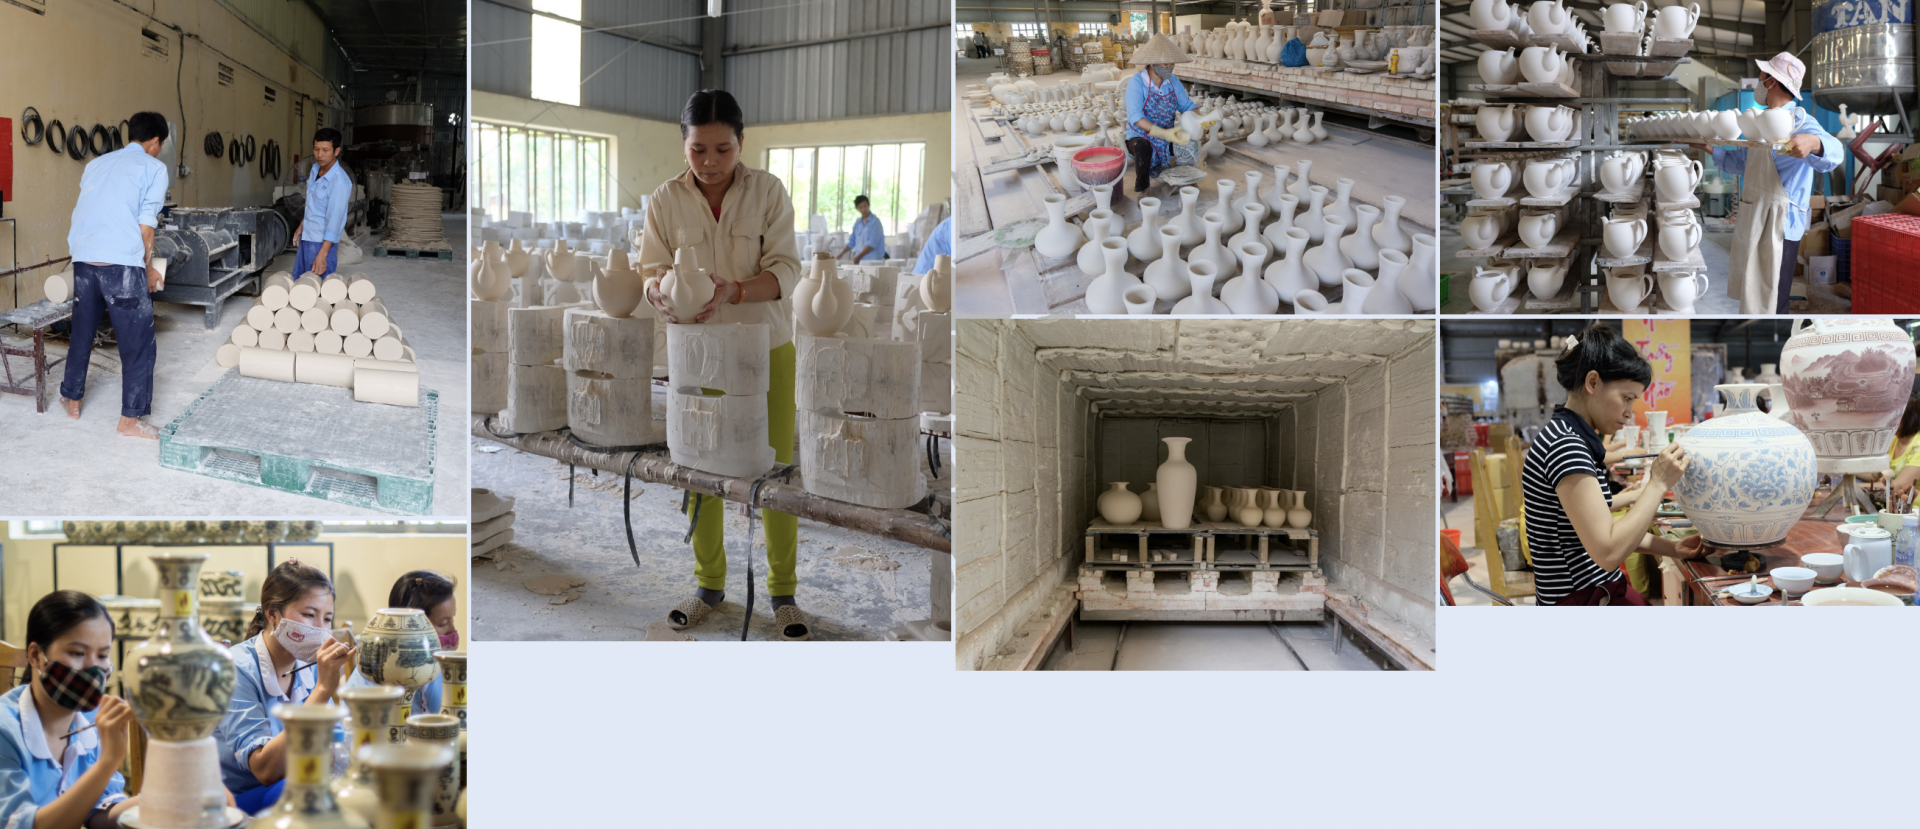 舟逗陶瓷生产流程的主要环节